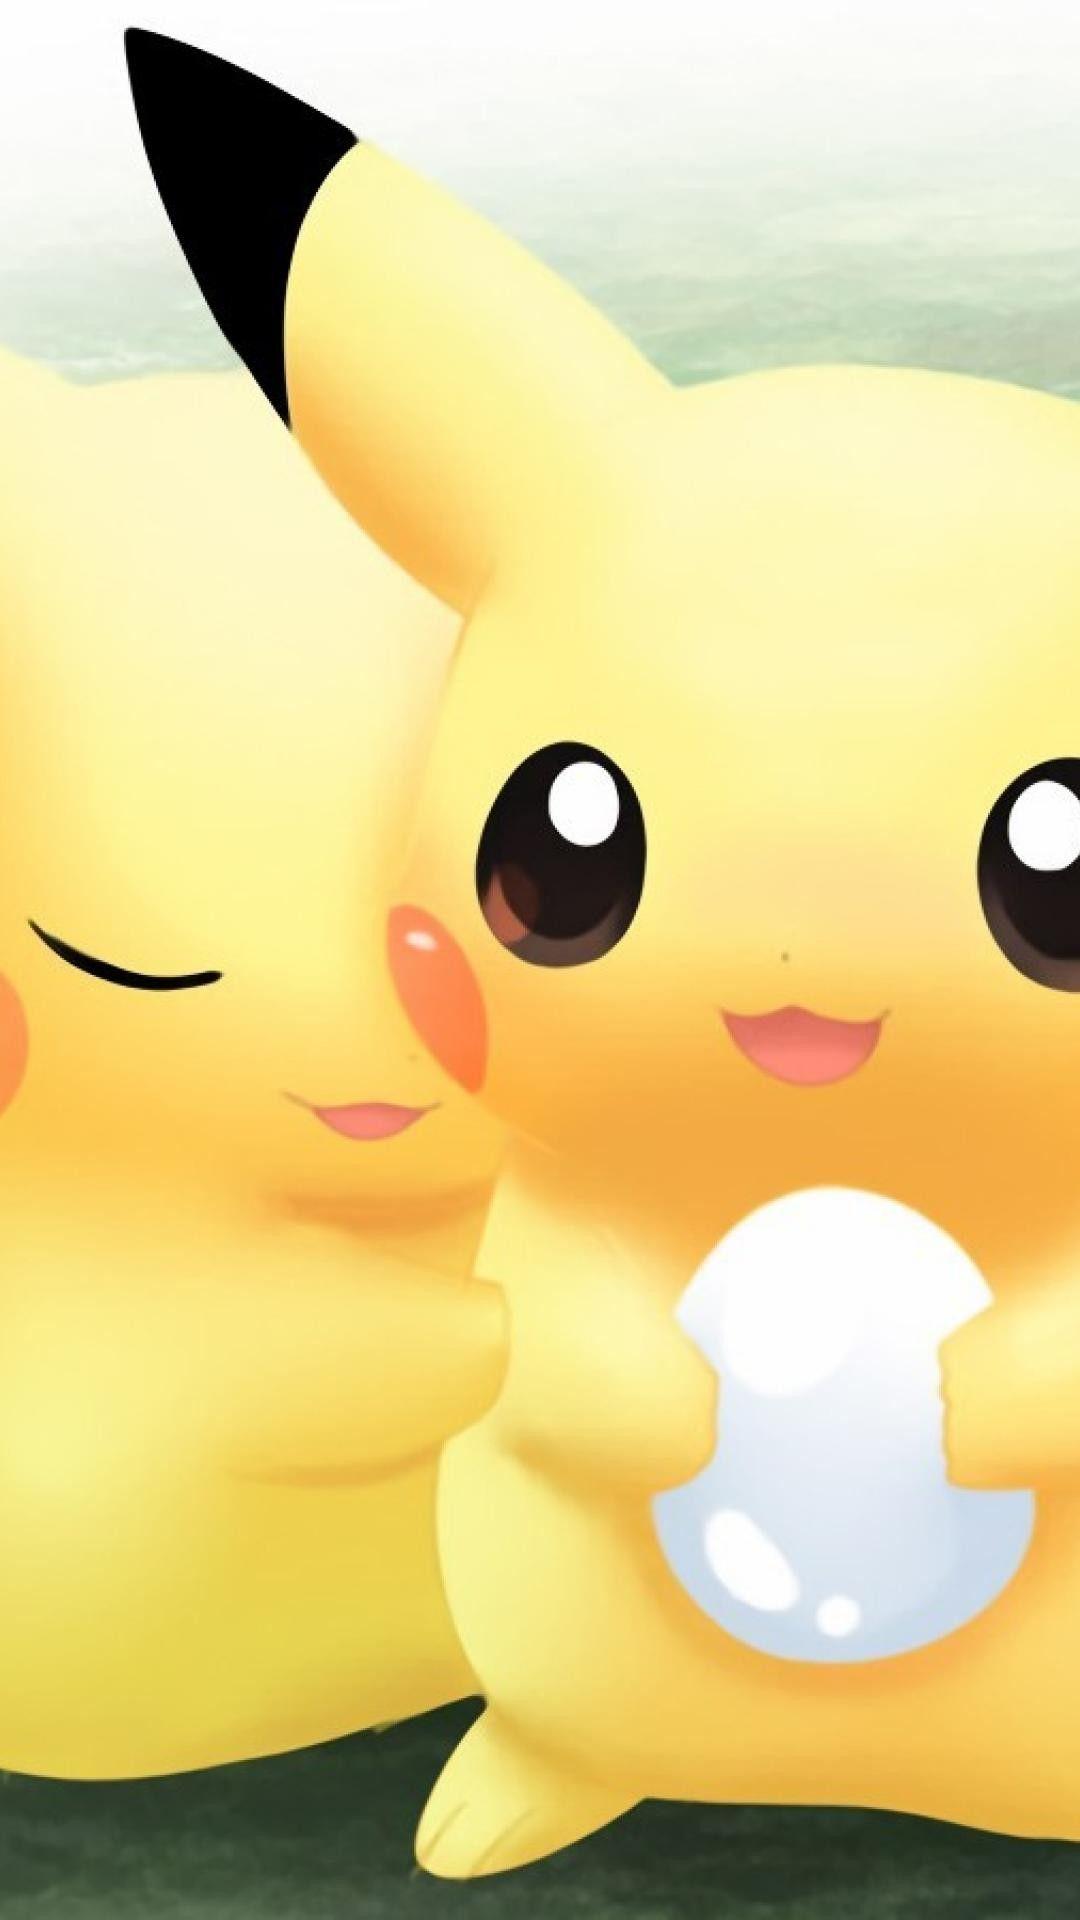 75 Cute Pikachu Wallpaper  WallpaperSafari